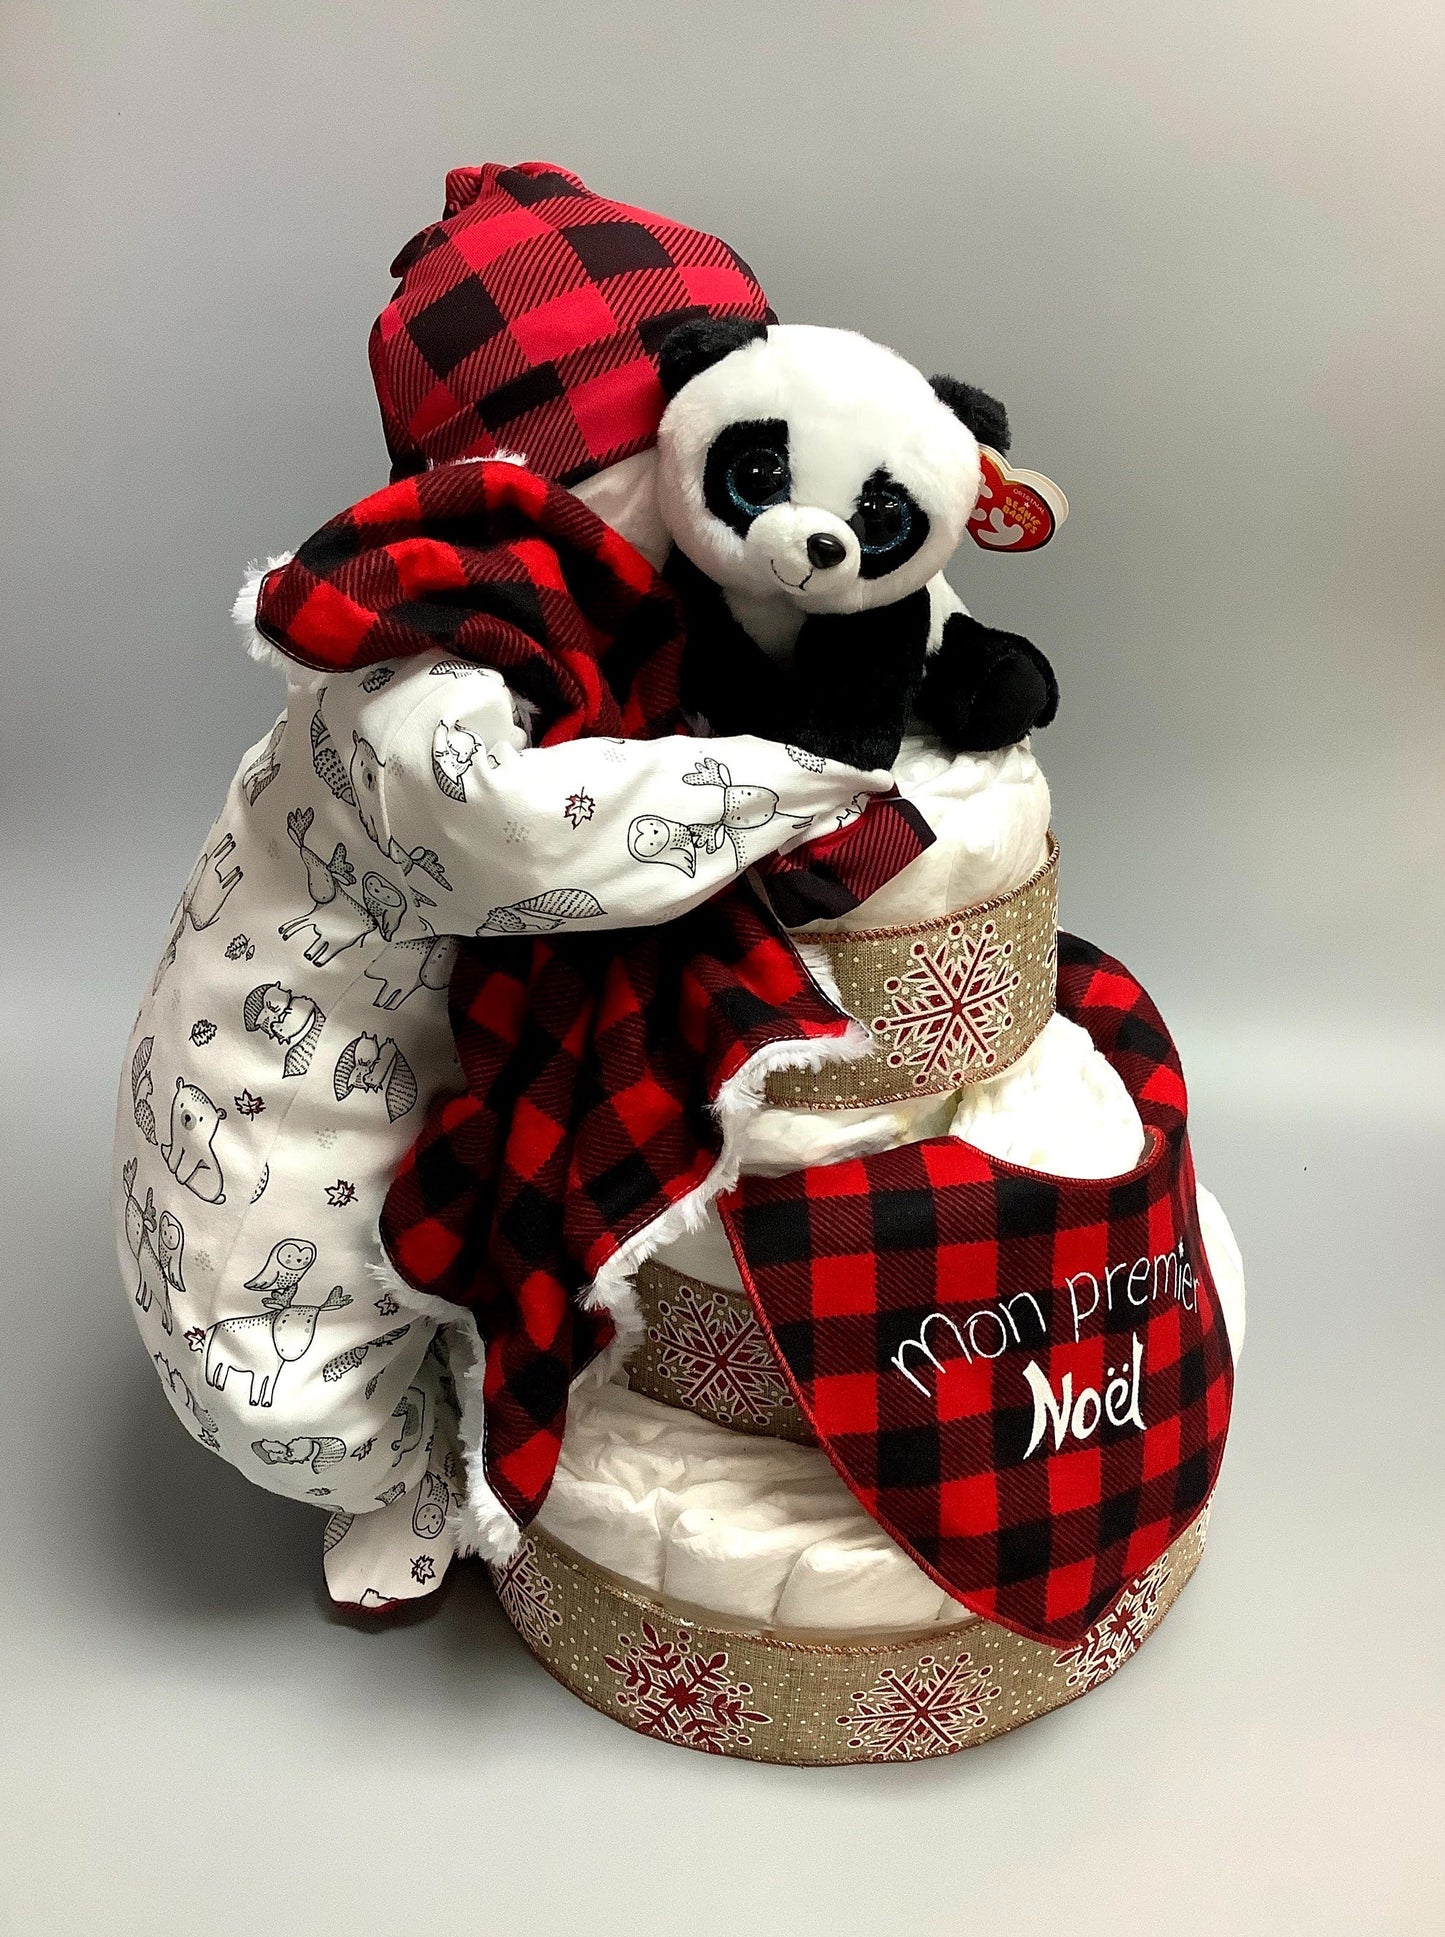 Ce gâteau contient :  - 60 couches (#2)  - 1 pyjamas - 1 bonnet en tricot de coton  - 1 toutou de panda  - 1 doudou 12'' x 12''  - 1 bavoir Mon premier Noël   Ce produit est unique et fait ici au Québec